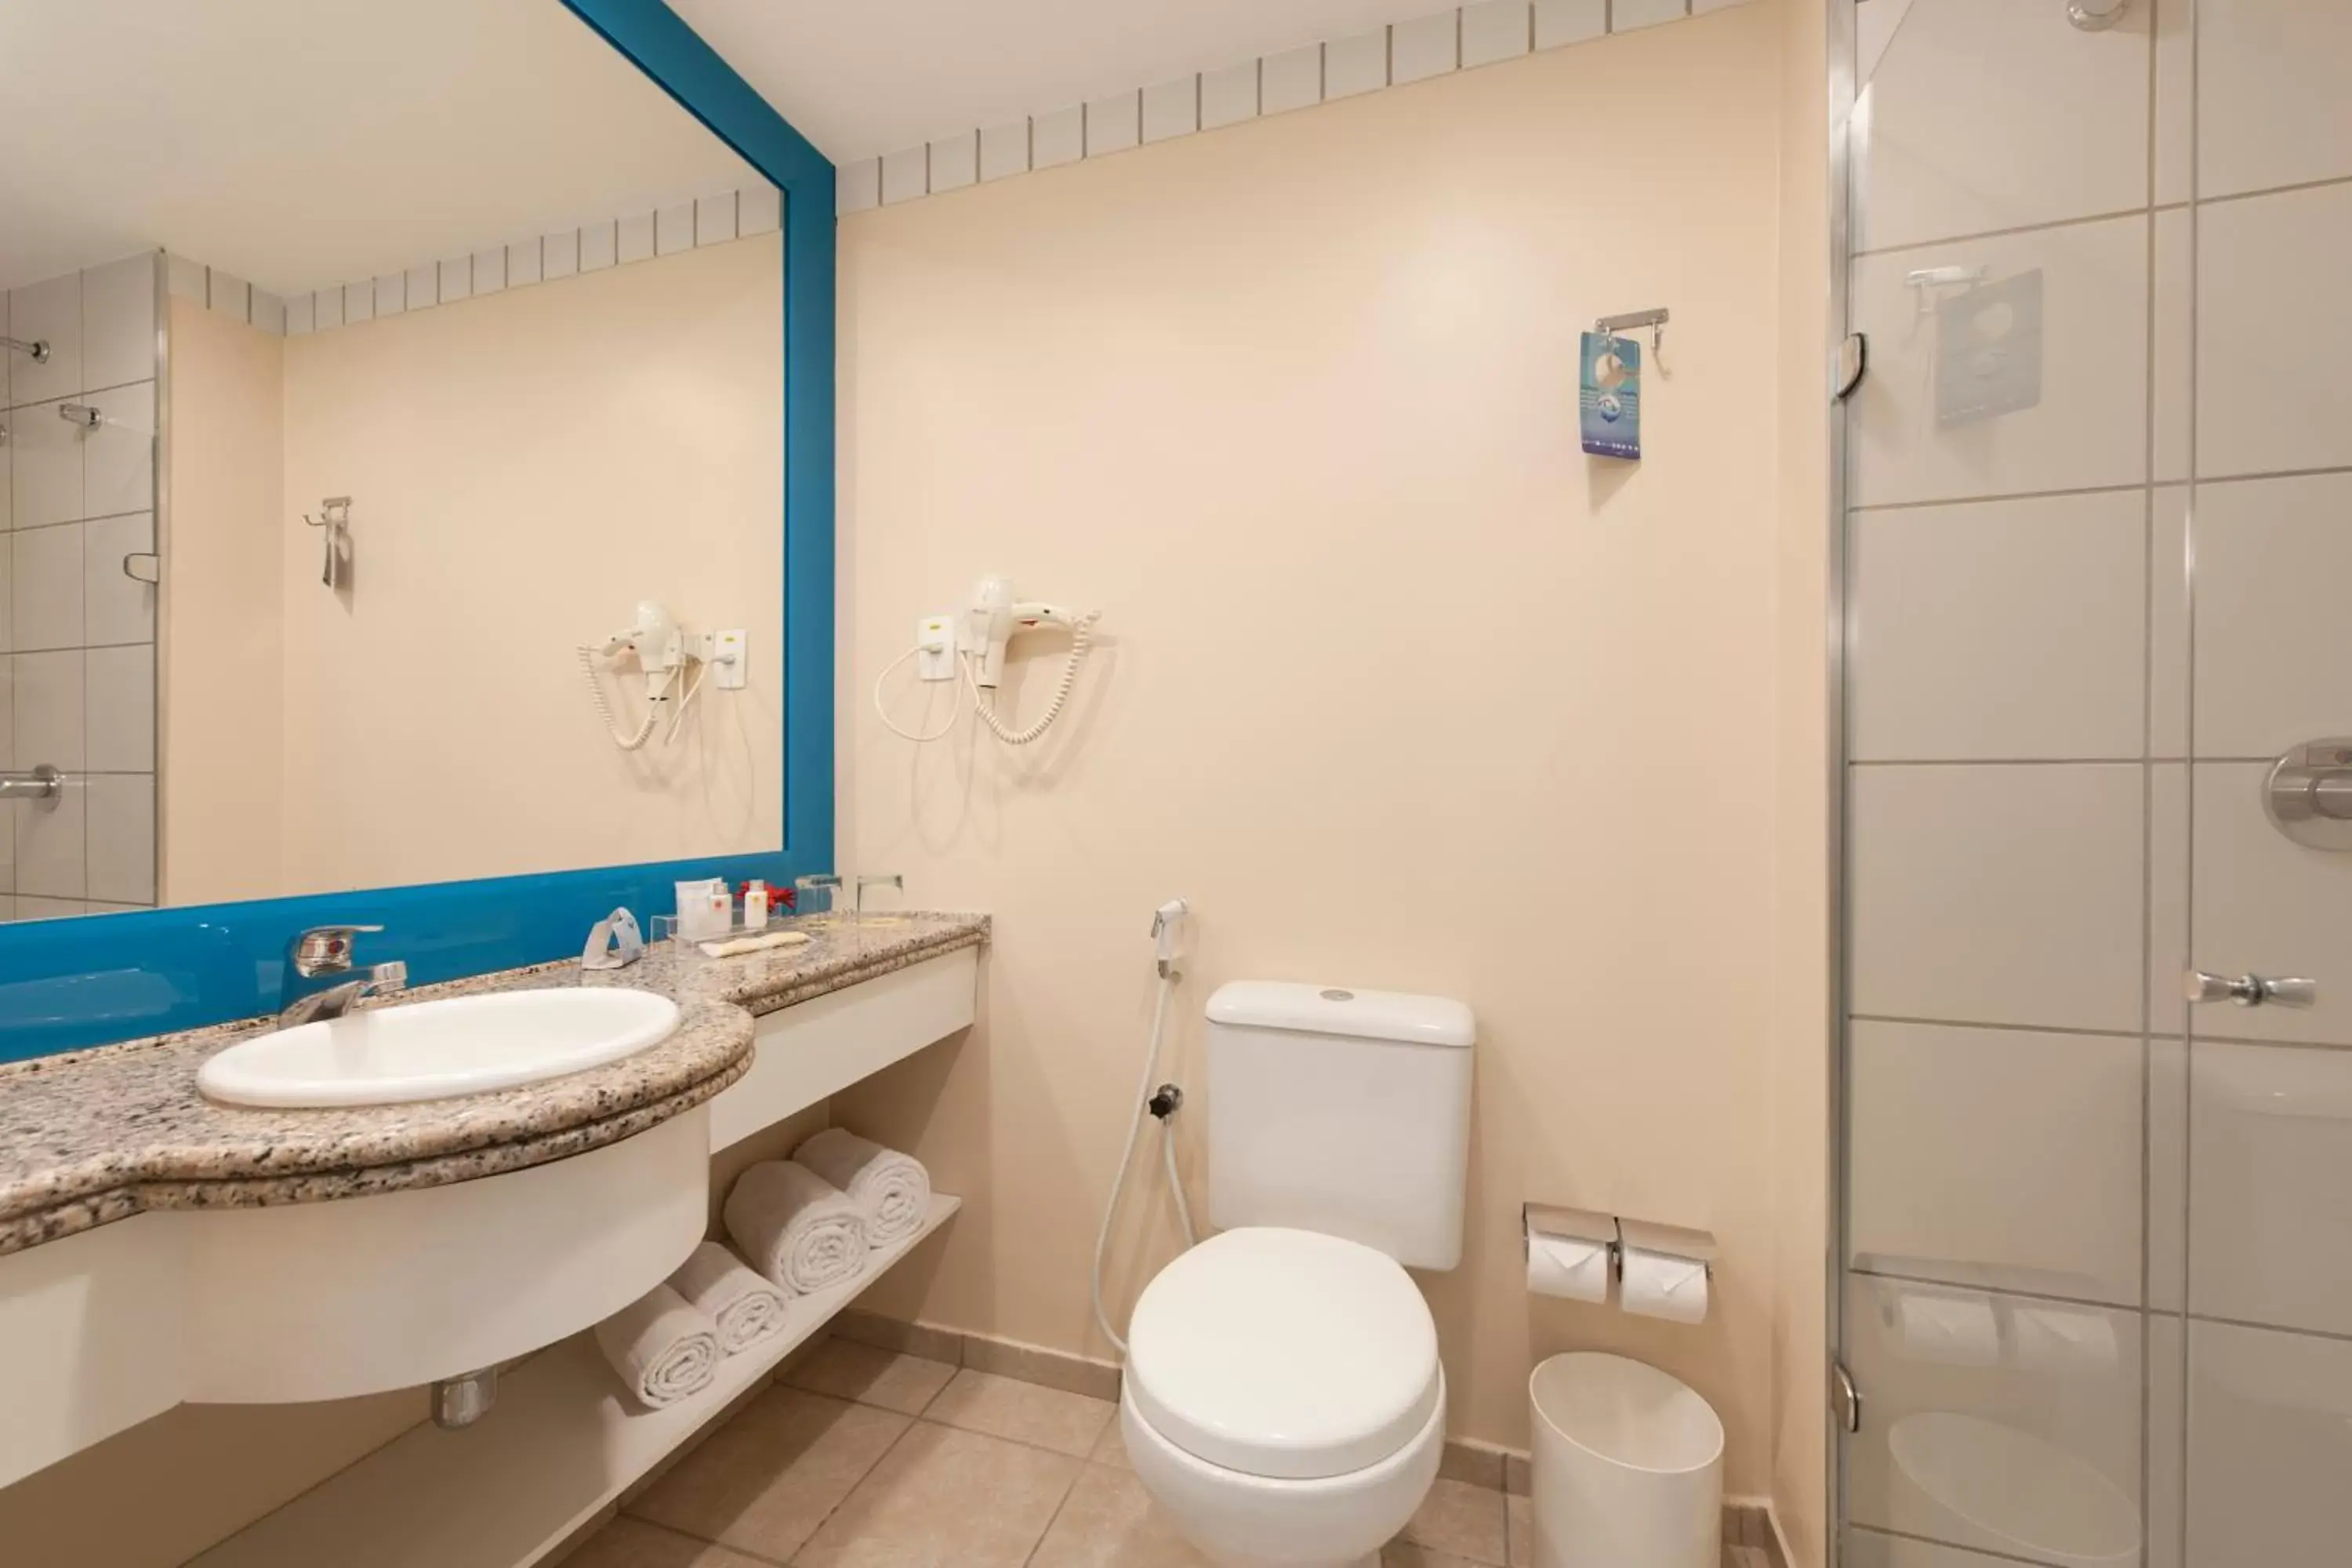 Toilet, Bathroom in Comfort Hotel Fortaleza